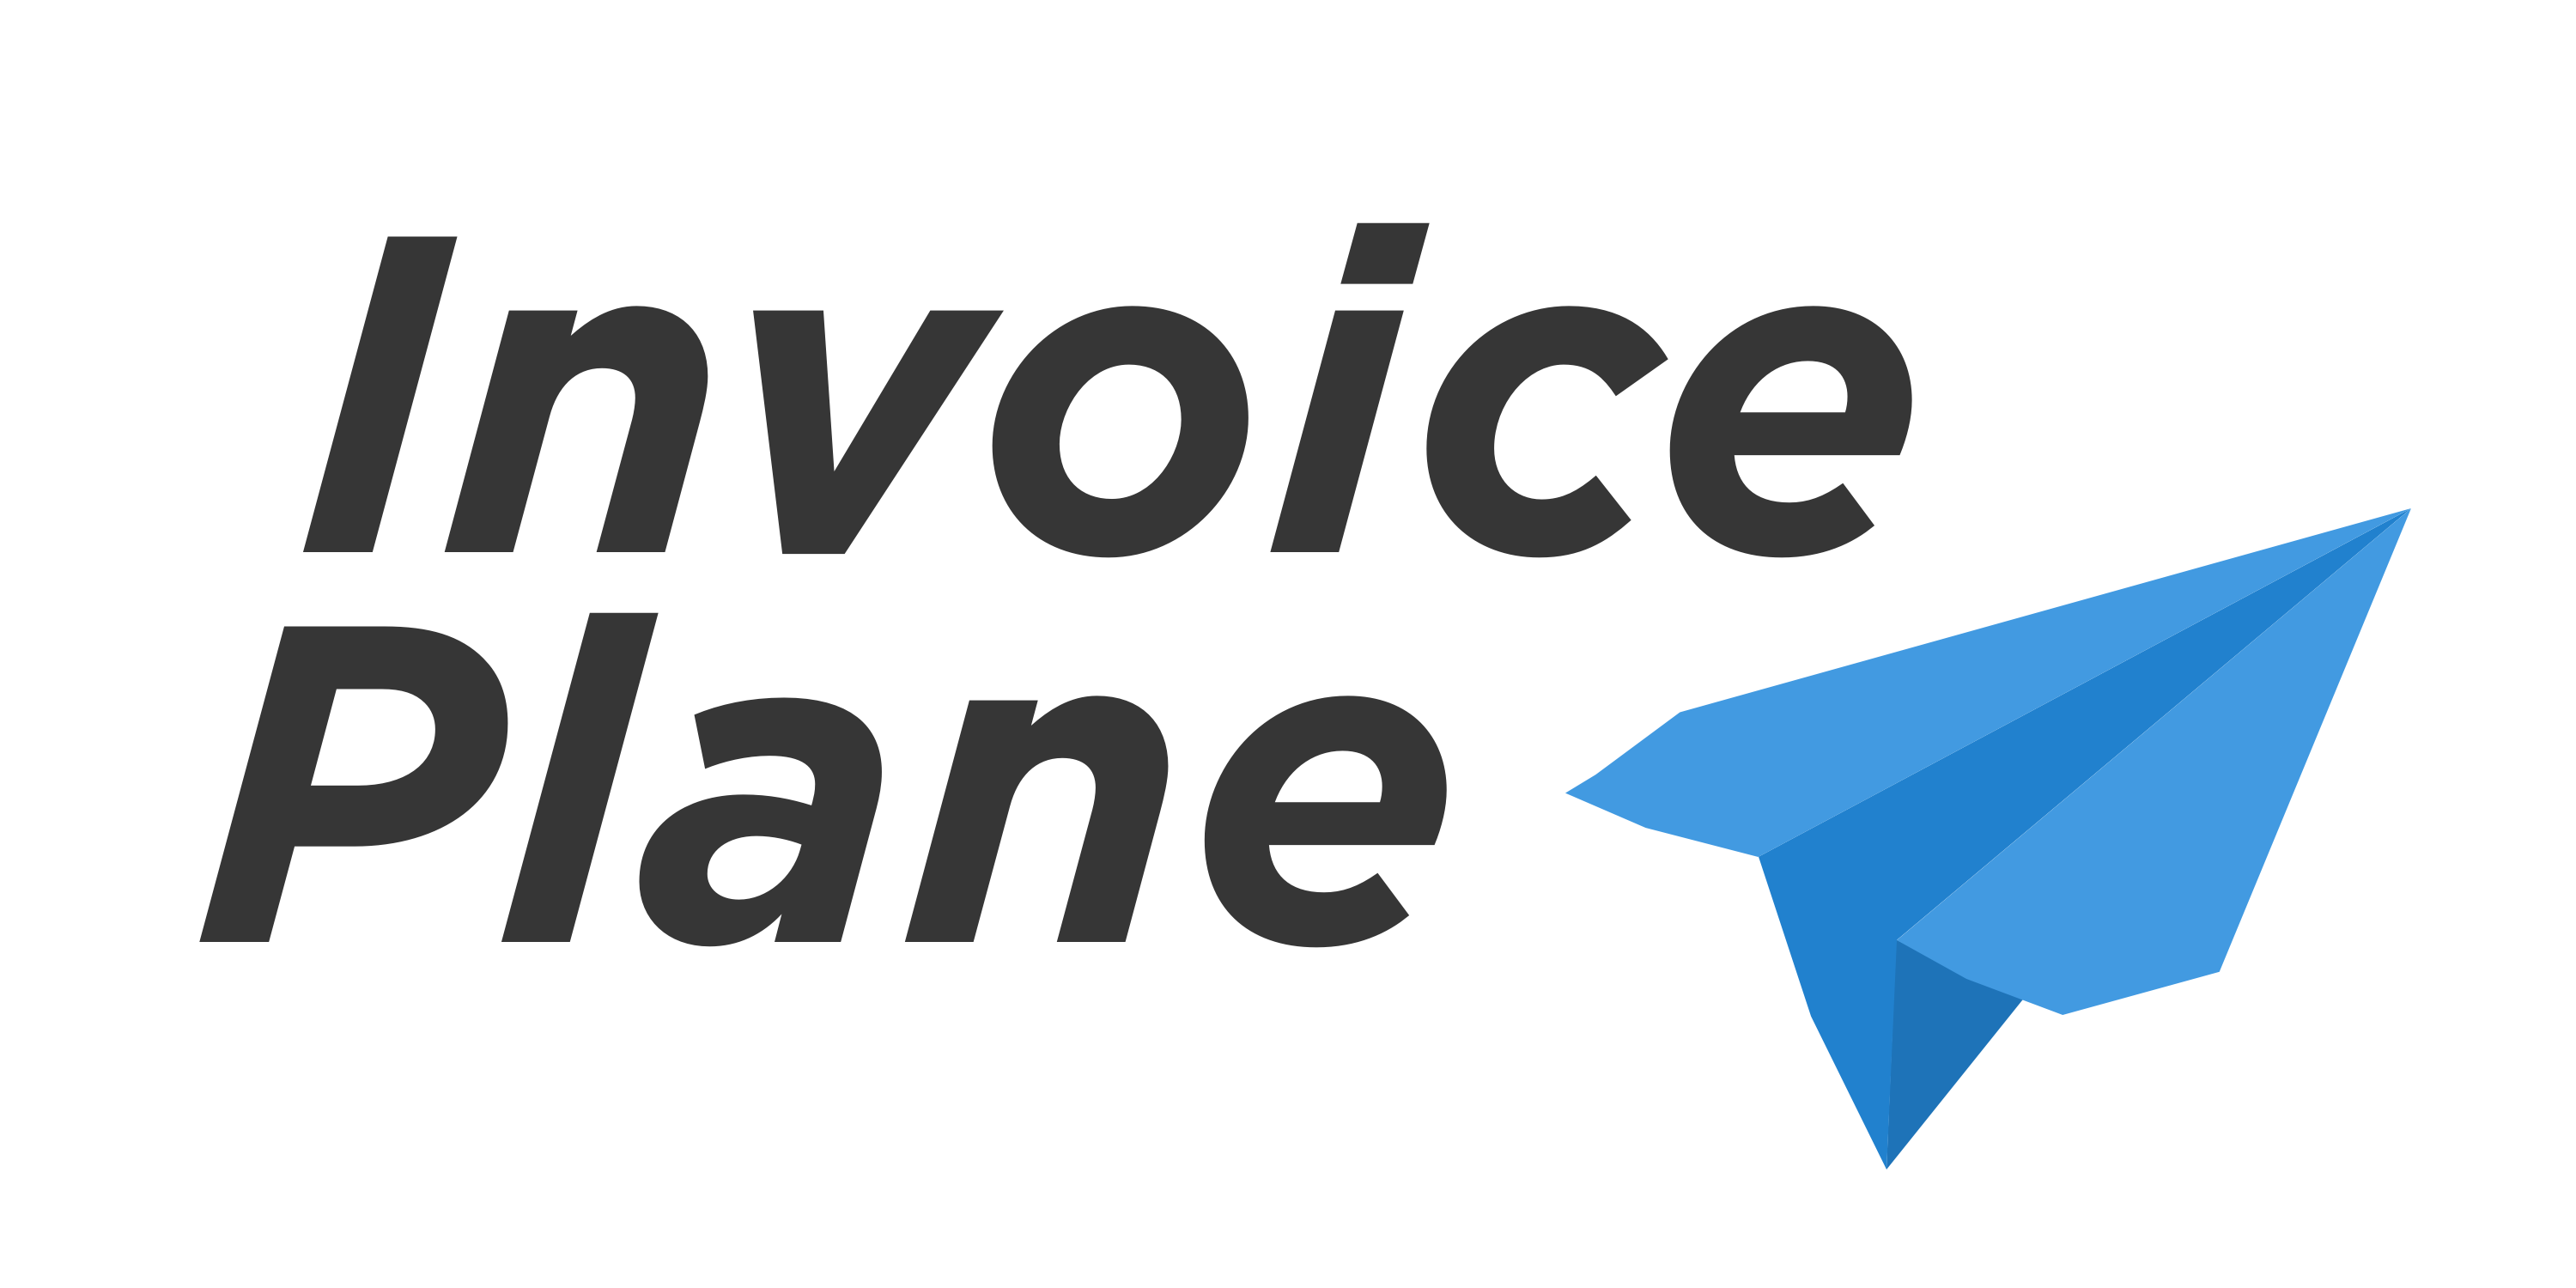 InvoicePlane logo